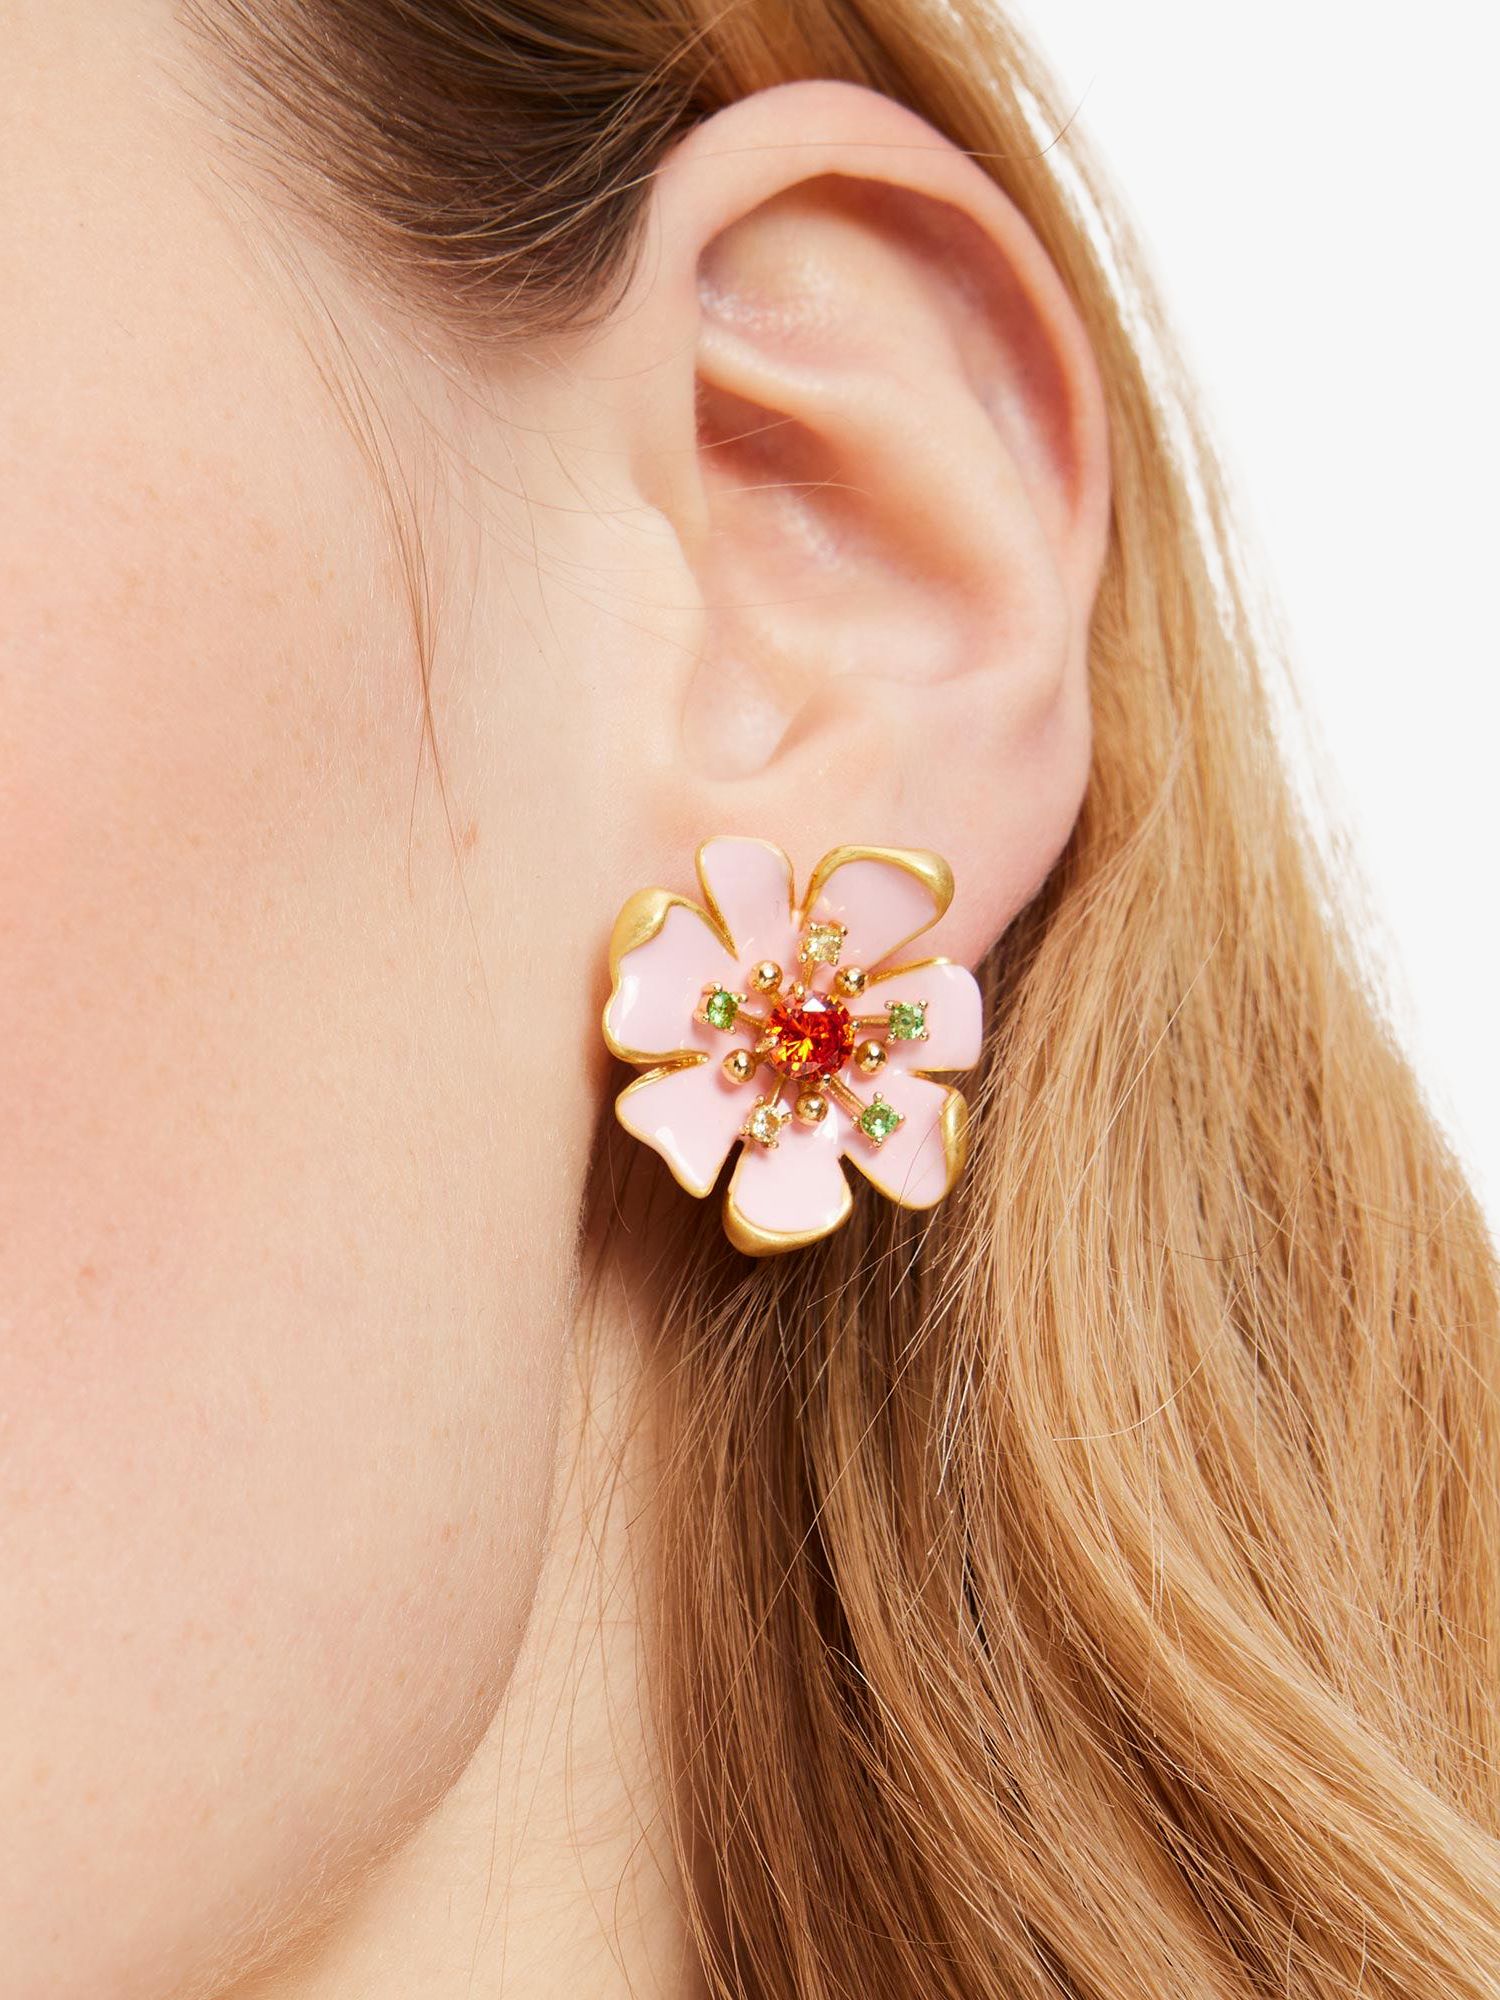 kate spade new york Bloom Enamel Stud Earrings, Multi